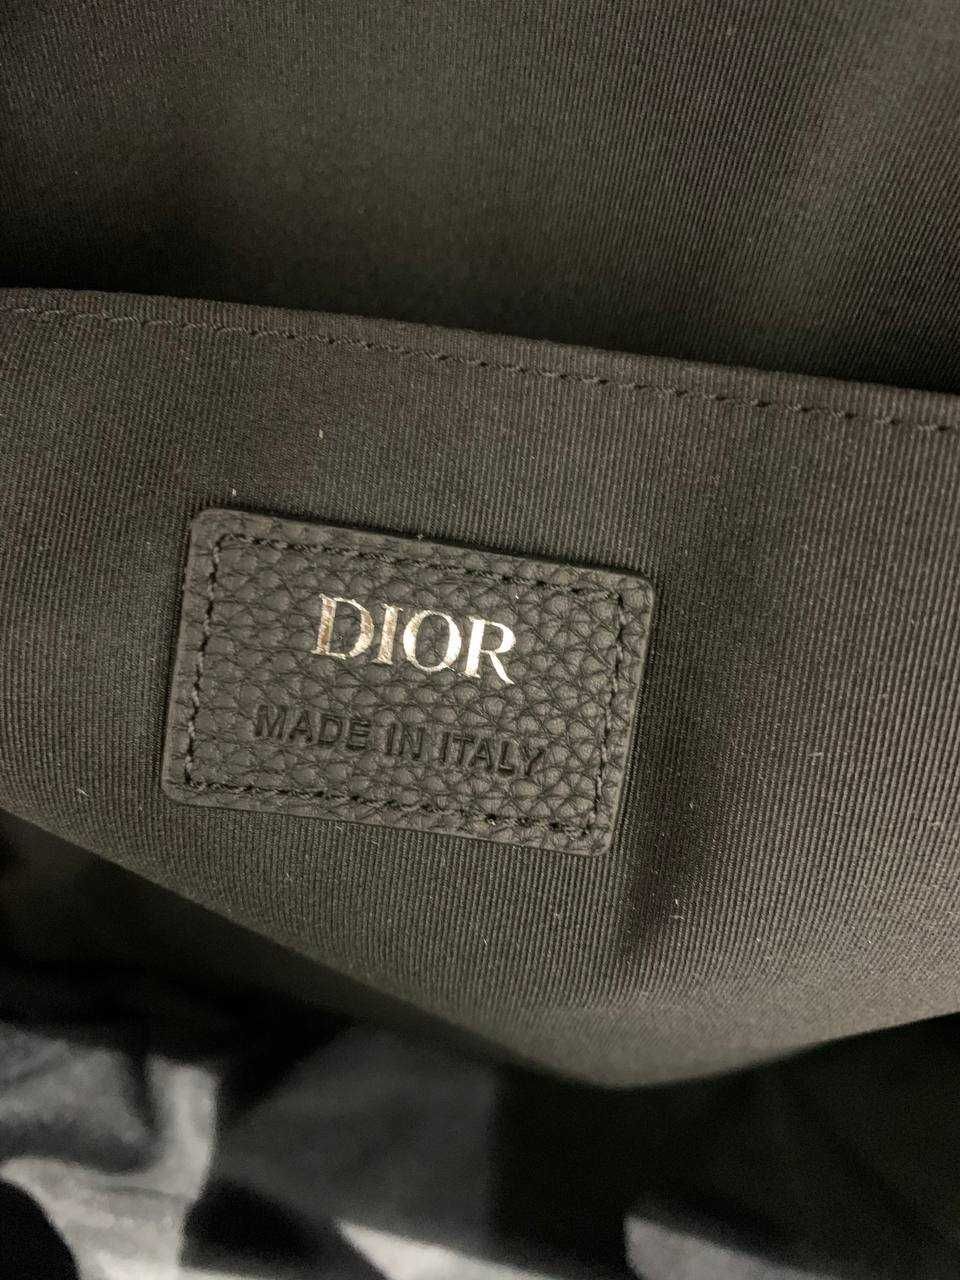 Dior Oblique, унисекс, оригинальный рюкзак